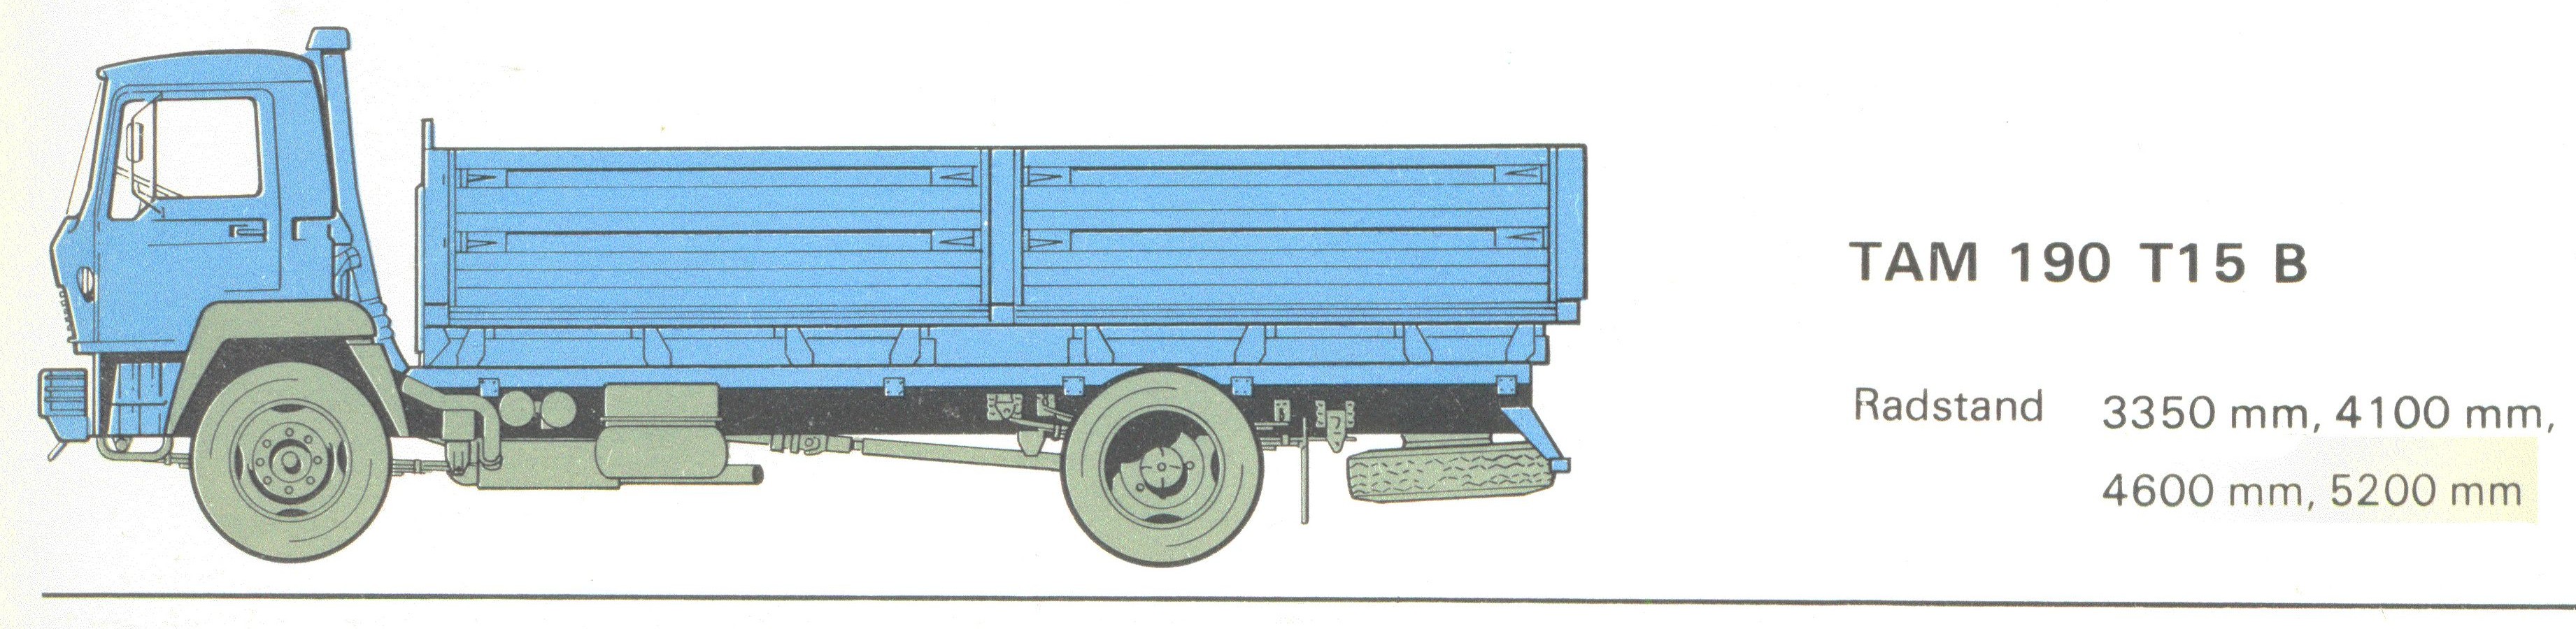 TAM 190 T15